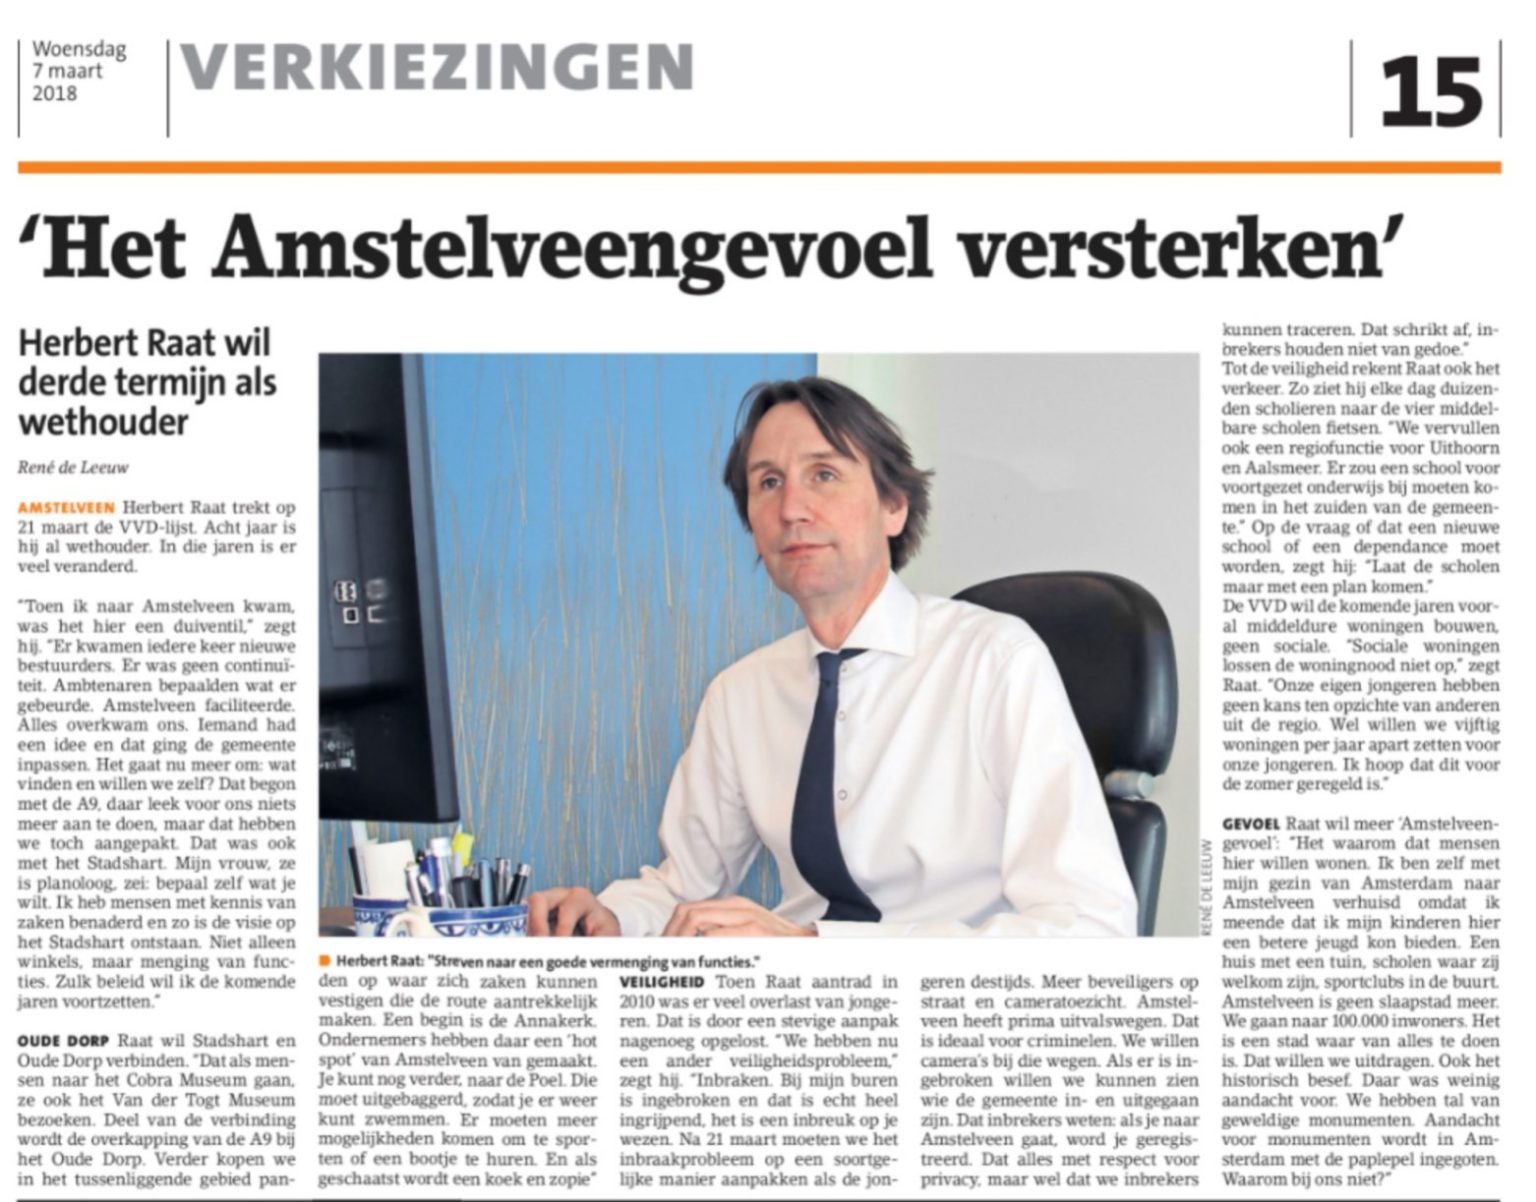 2018-7-3 Amstelveens Nieuwsblad interview lijstrekker VVD Amstelveen Herbert Raat over het Amstelveengevoel, Annakerk, aanpak inbraken en nog veel meer